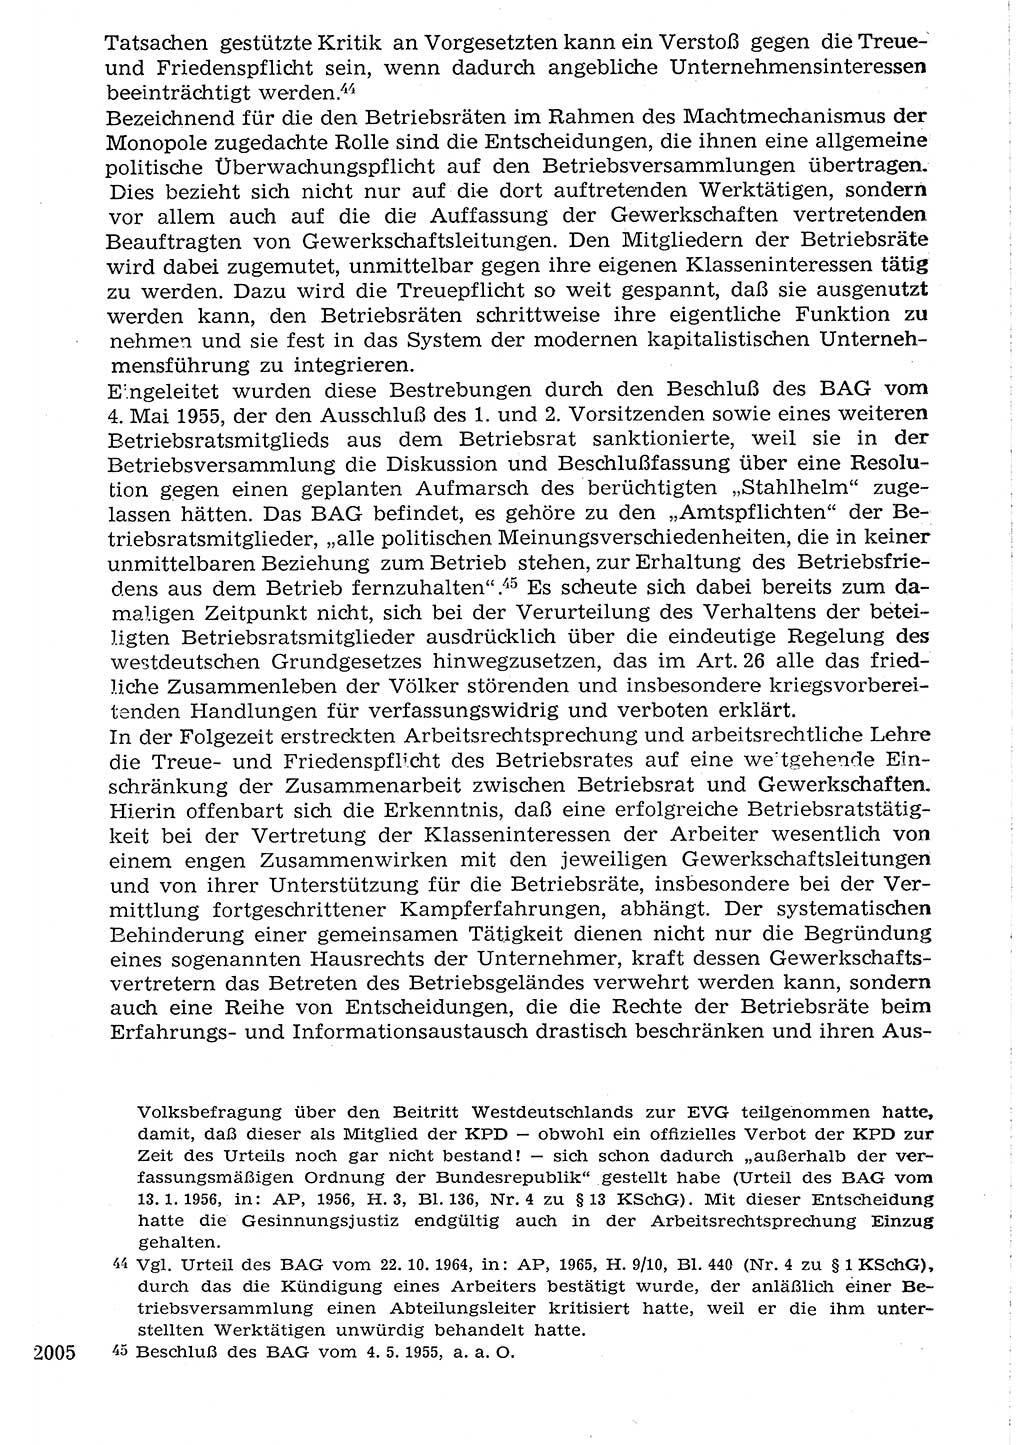 Staat und Recht (StuR), 17. Jahrgang [Deutsche Demokratische Republik (DDR)] 1968, Seite 2005 (StuR DDR 1968, S. 2005)